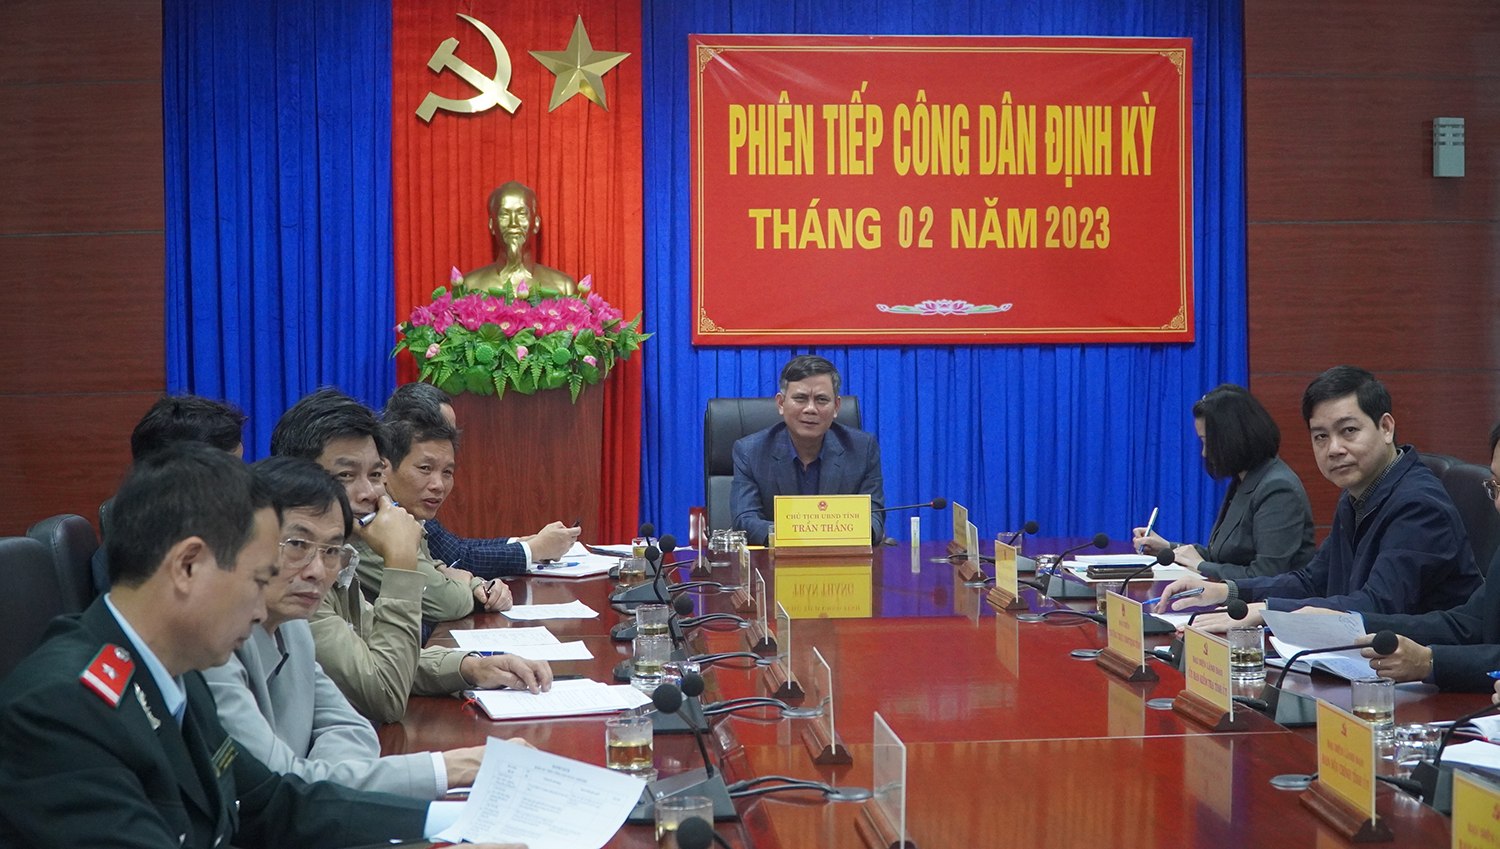  Toàn cảnh phiên tiếp công dân của đồng chí Chủ tịch UBND tỉnh Trần Thắng